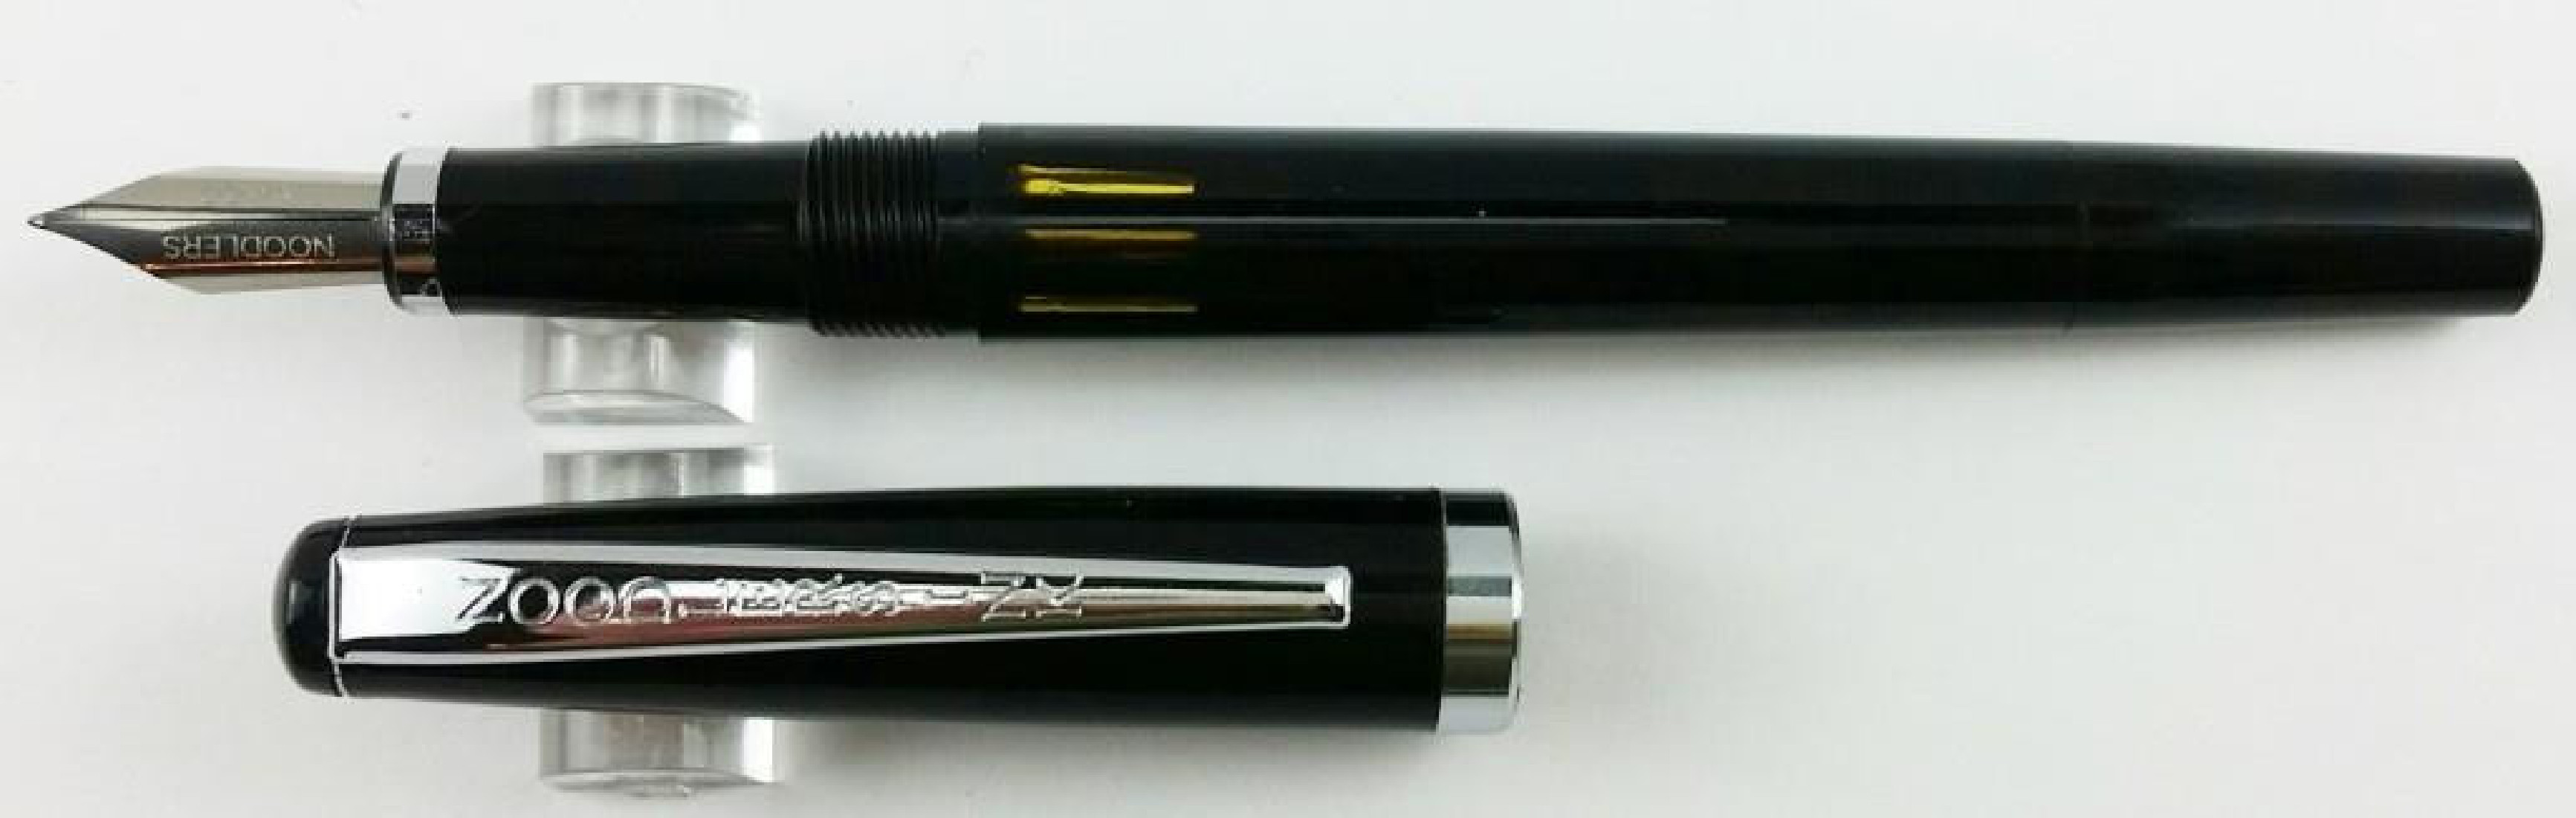 Noodlers Creaper Black Standard Flex 17001  Fountain Pen